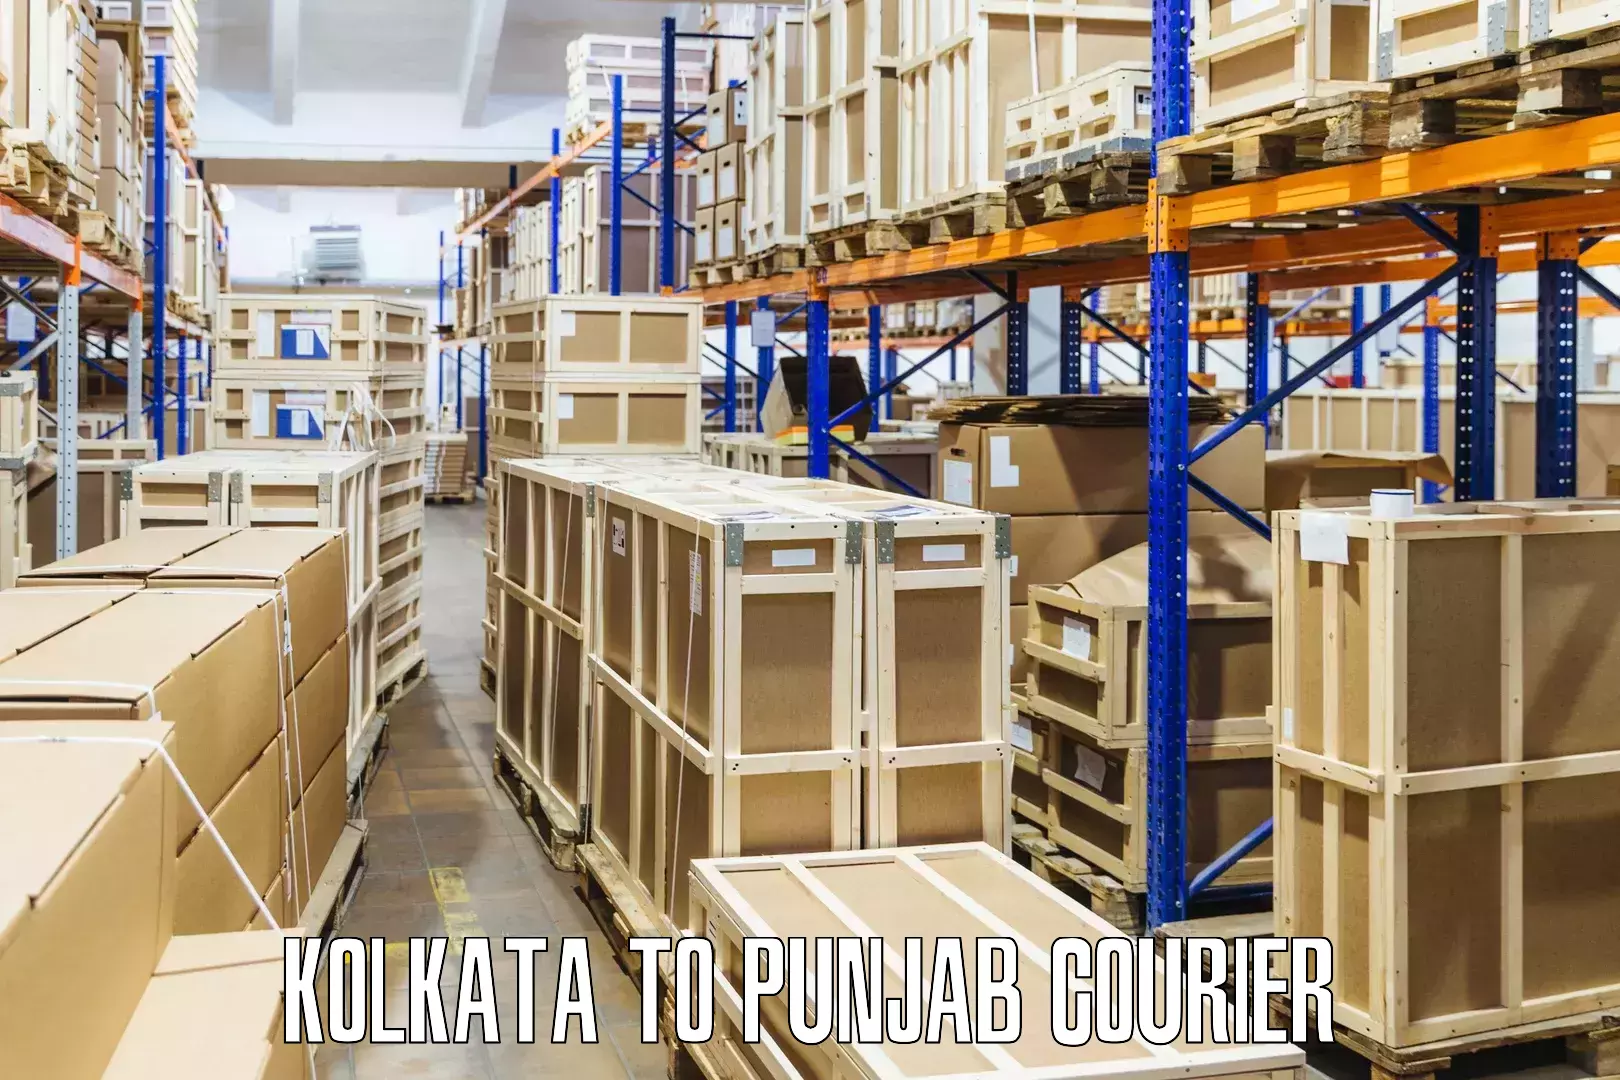 Package tracking Kolkata to Punjab